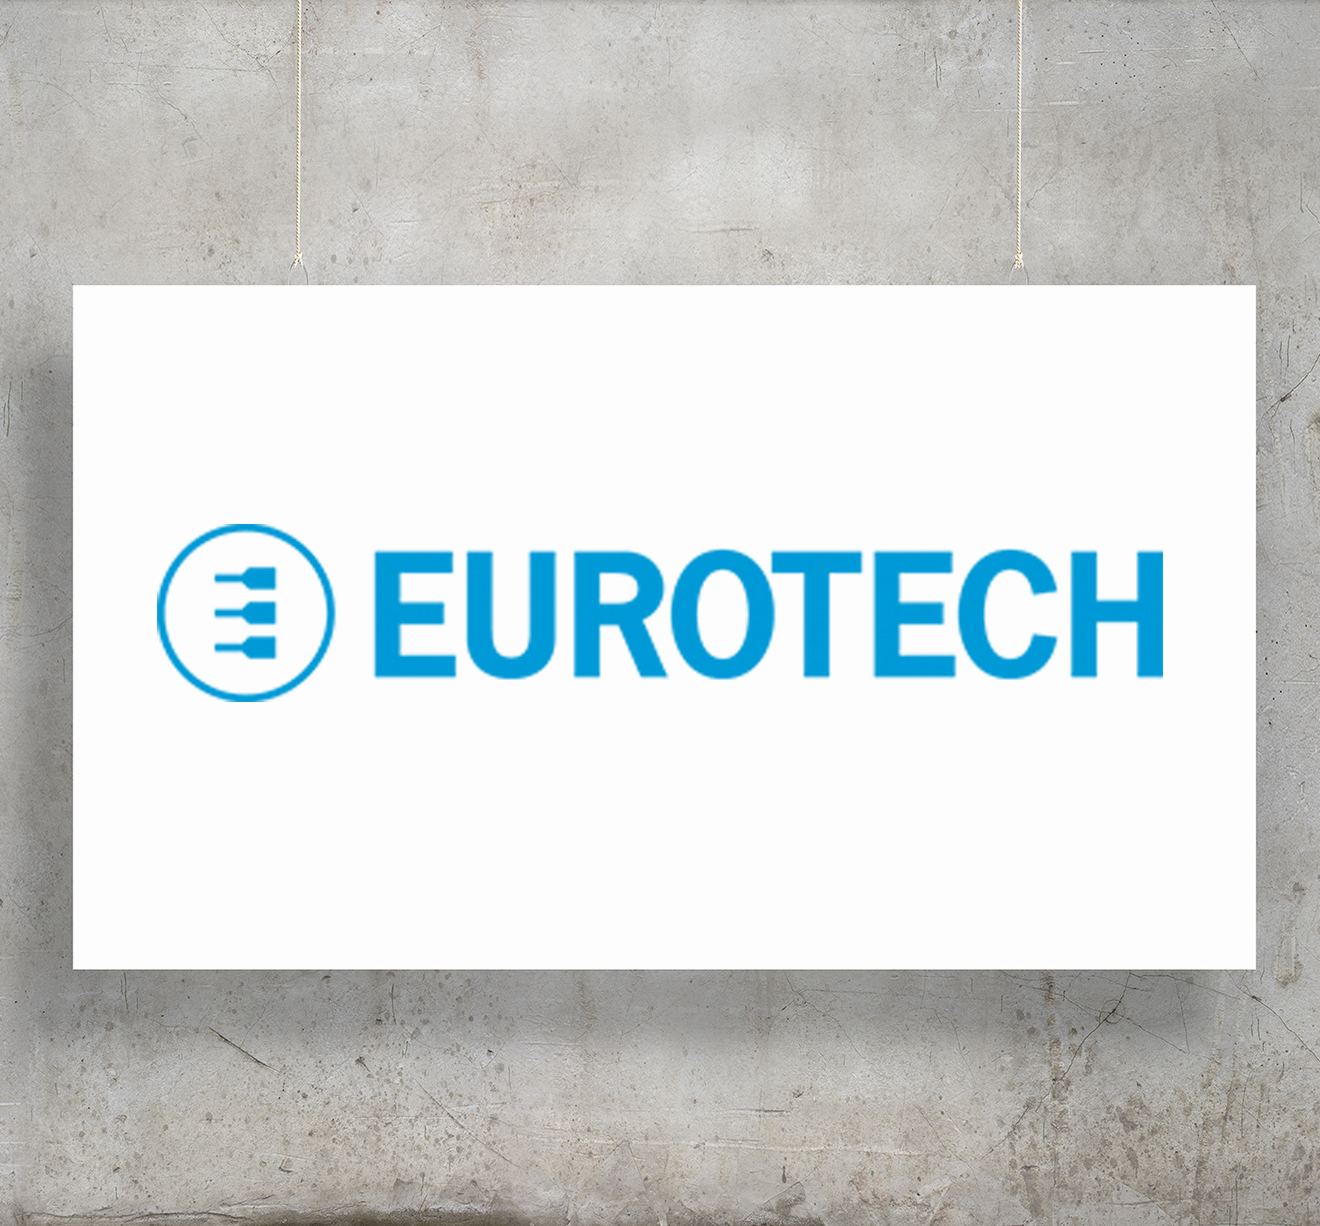 Eurotech Company Profile